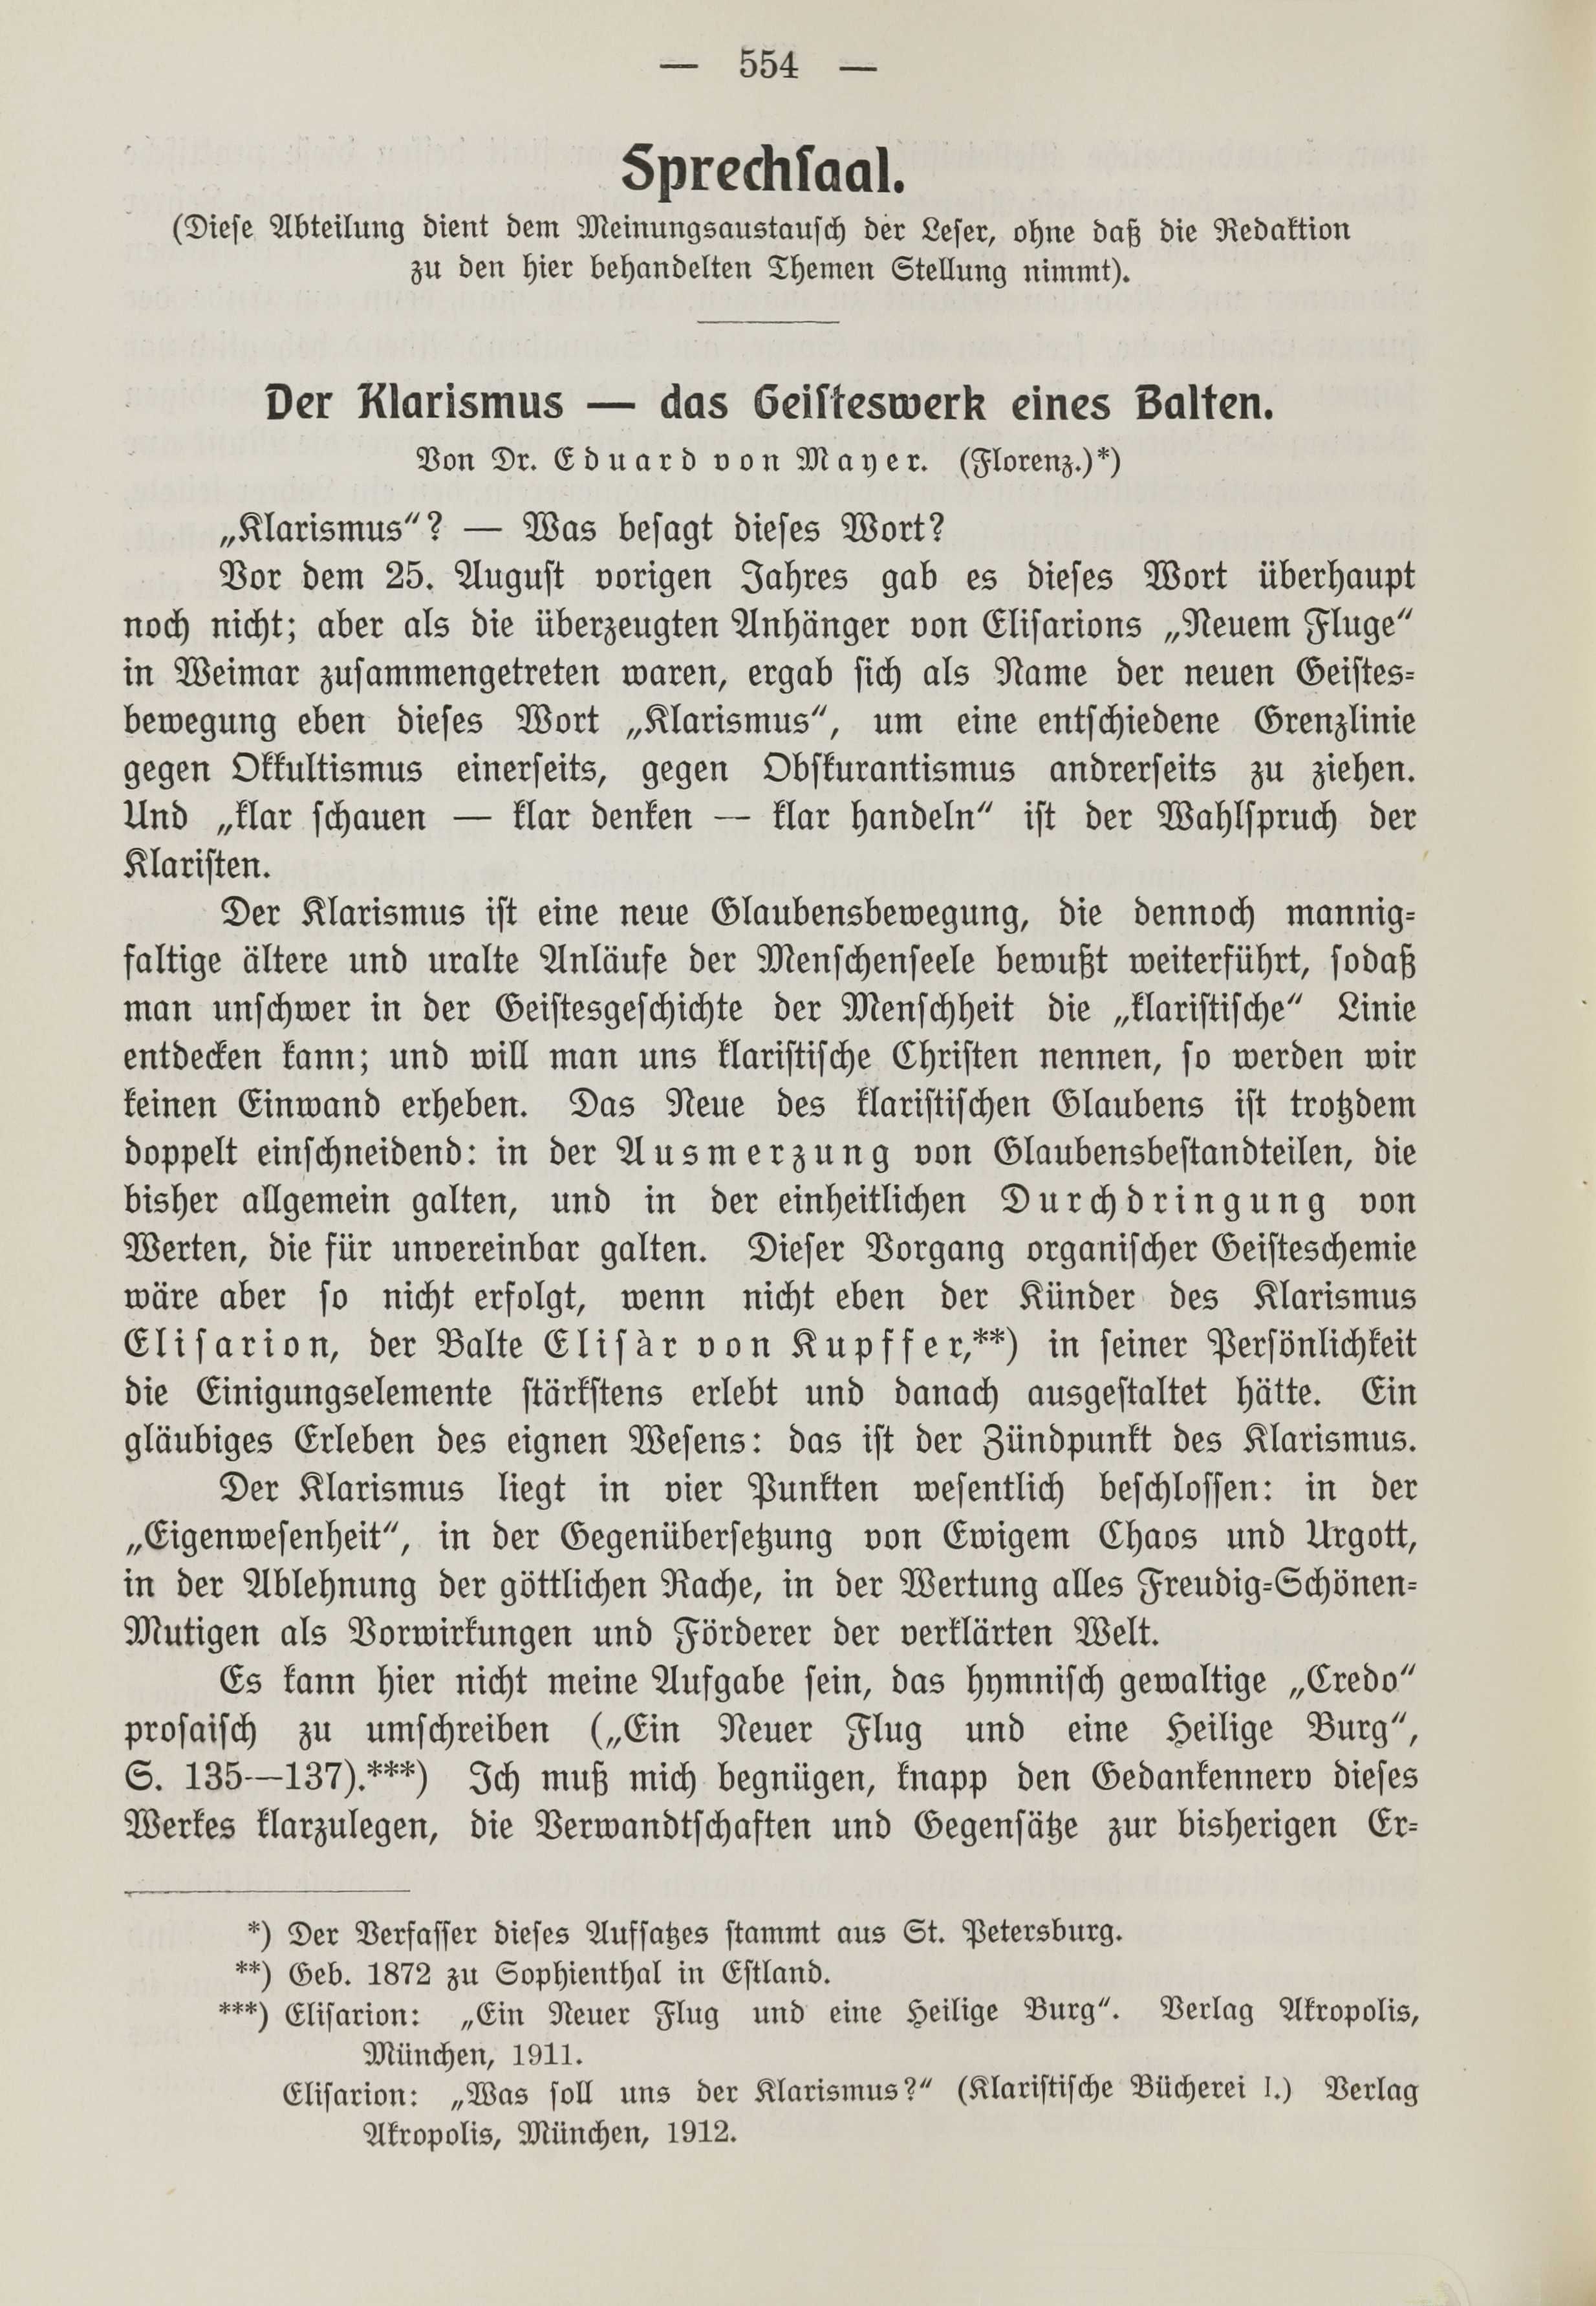 Der Klarismus - das Geisteswerk eines Balten (1912) | 1. (554) Main body of text